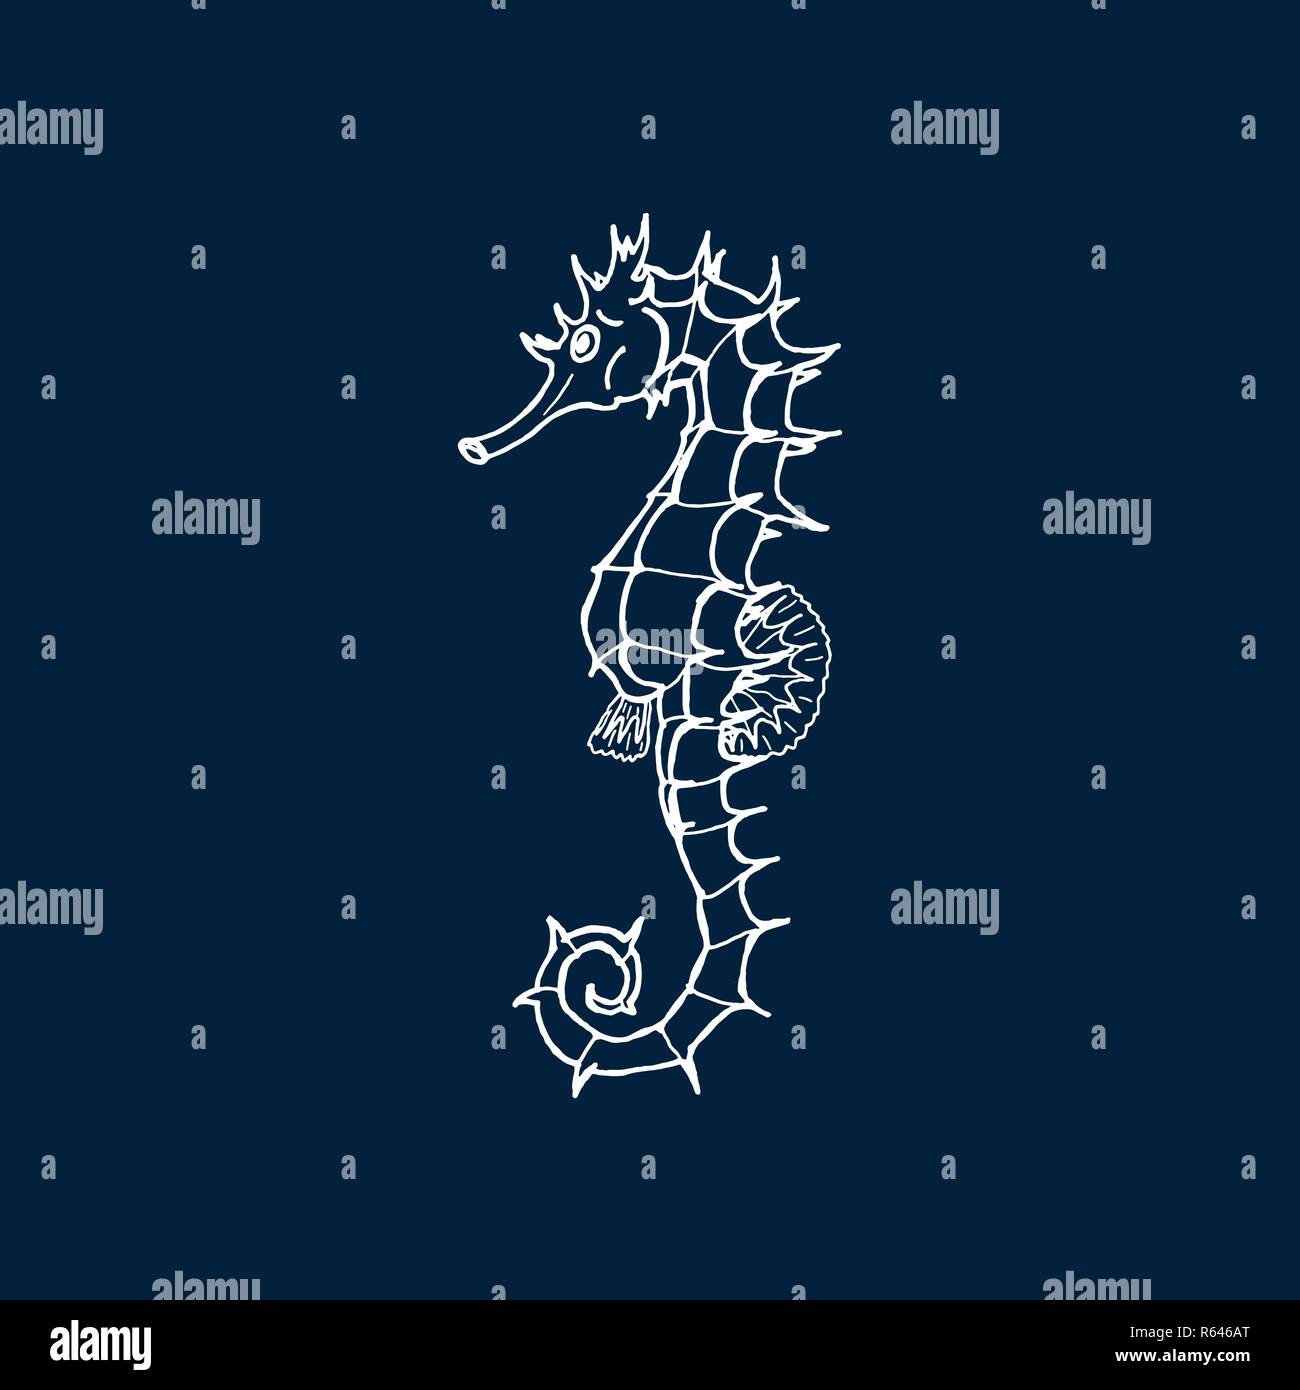 Vector illustration of white seahorse silhouette sur fond bleu foncé. Dessin à la main seahorse Illustration de Vecteur